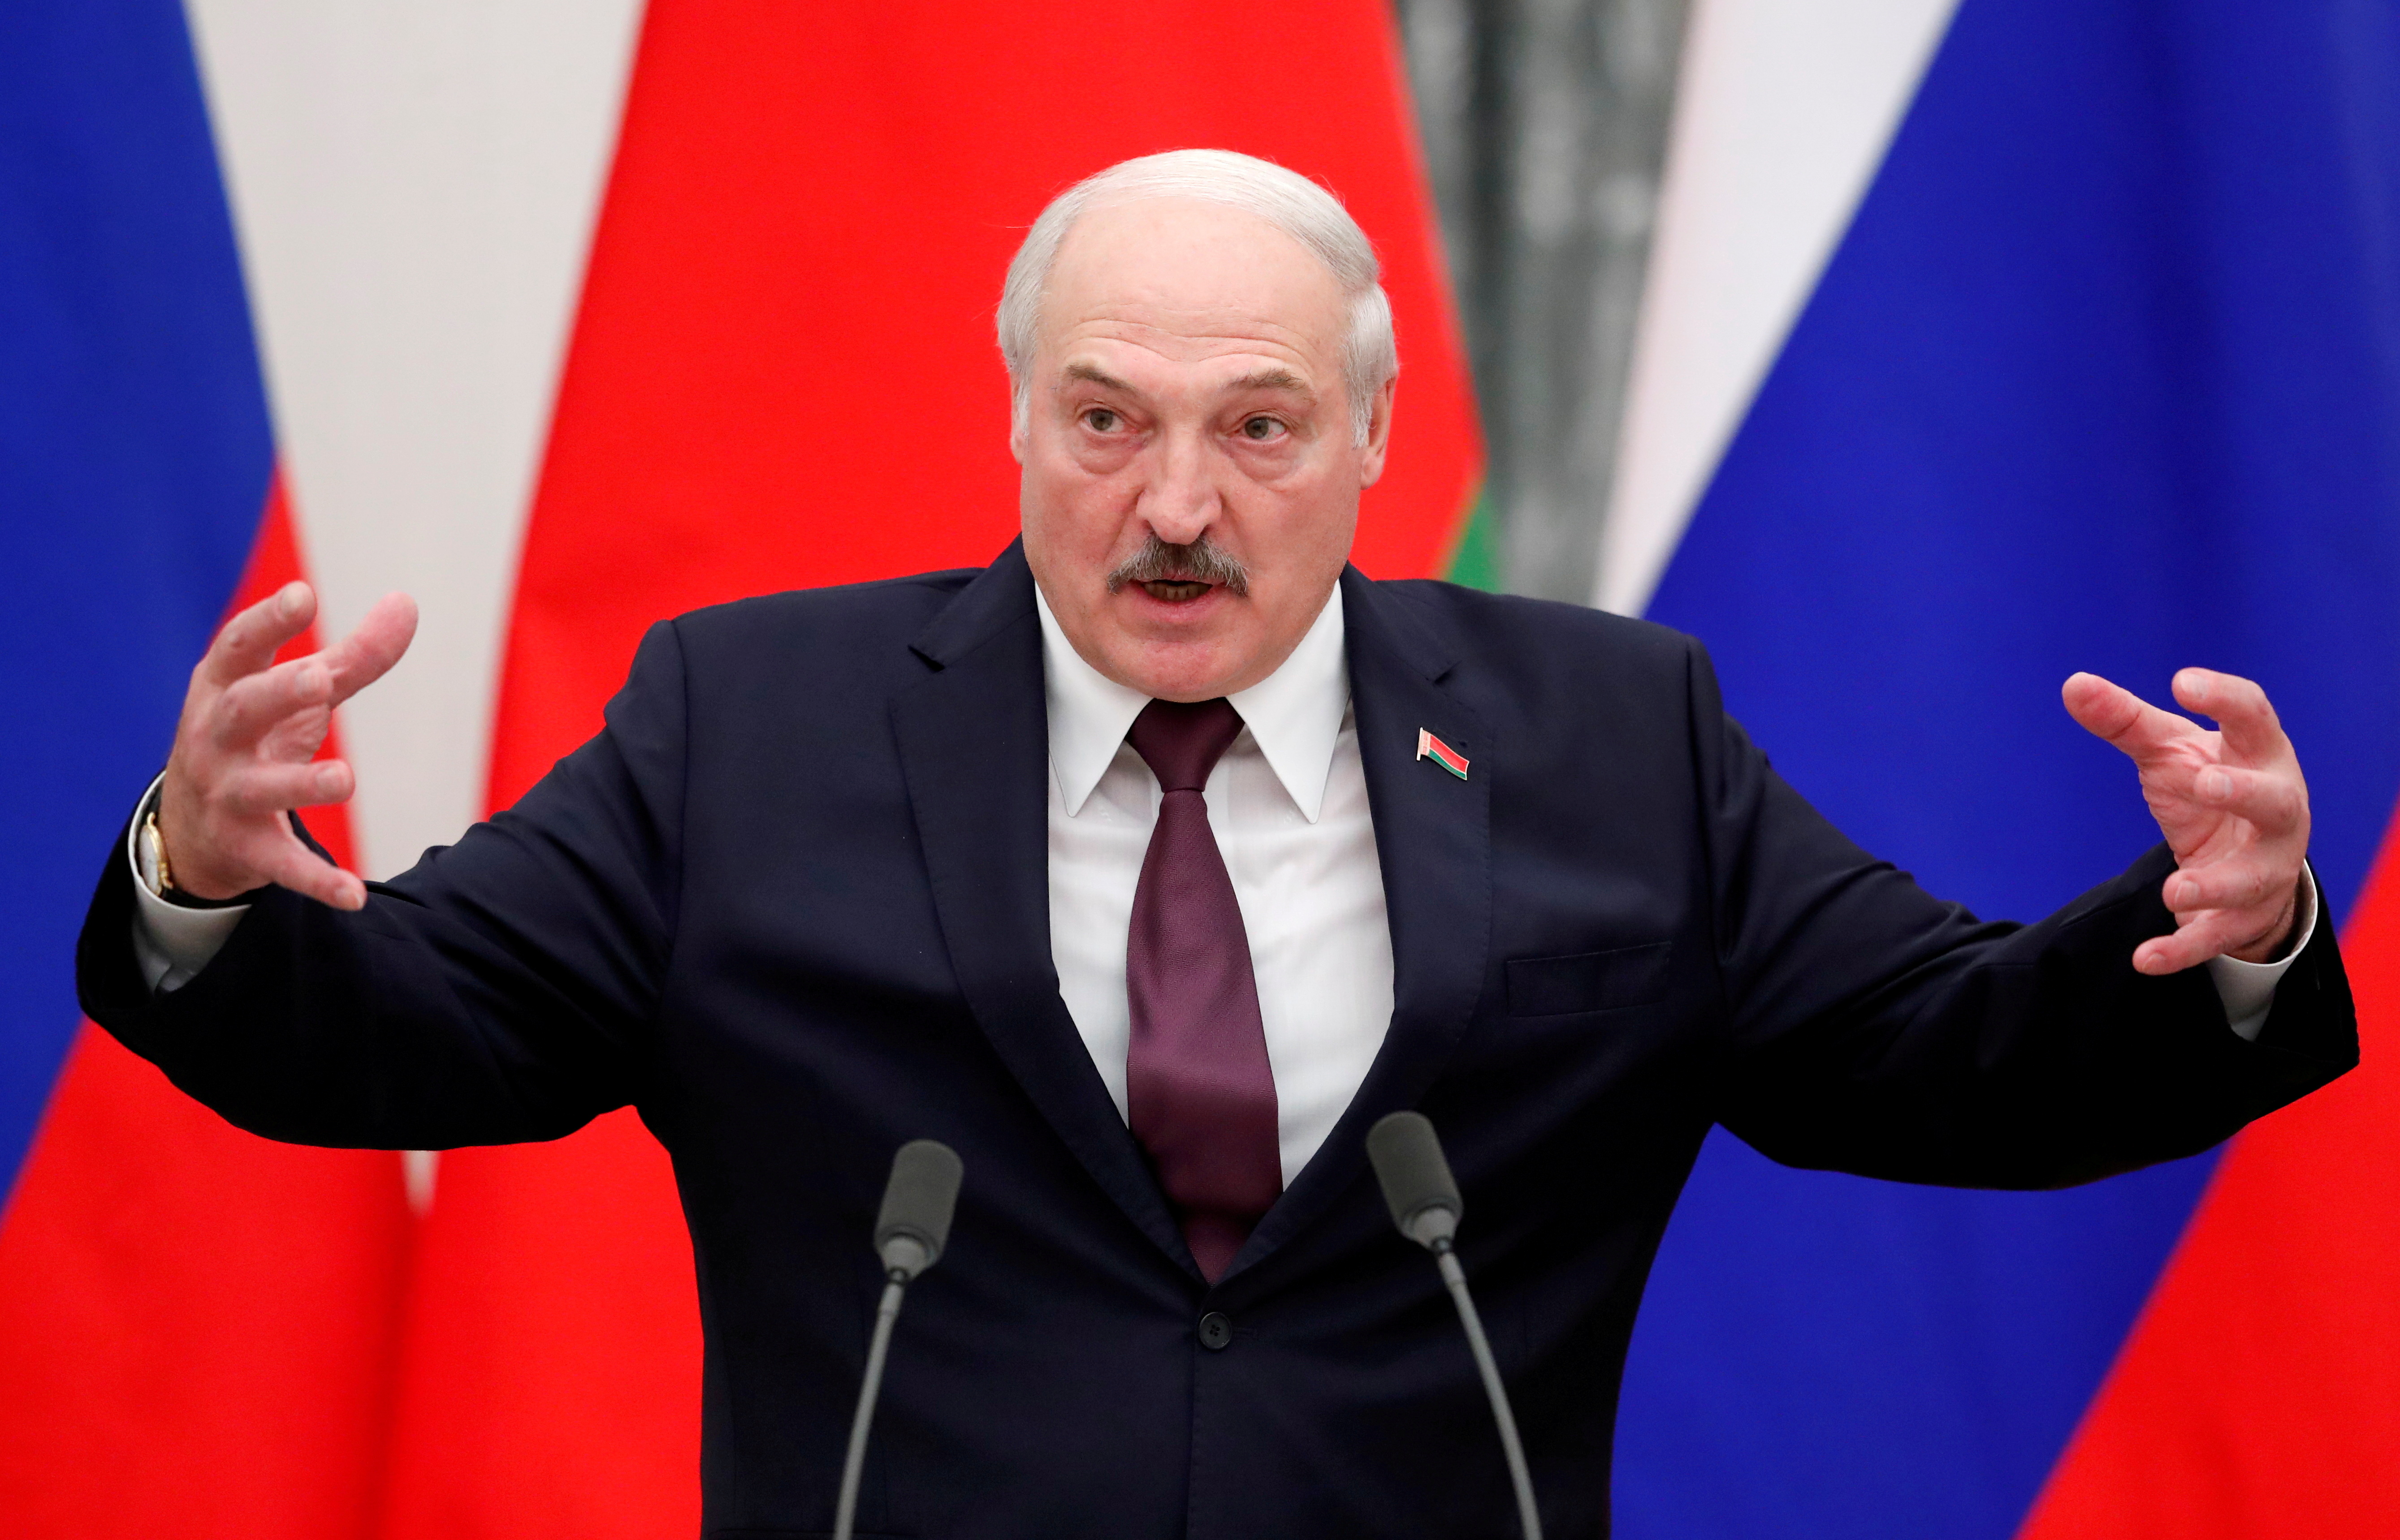 Alexander Lukashenko lleva 27 años al mando de Bielorrusia bajo un liderezgo autoritaro que persigue cualquier disidencia en una república con su economía totalmente controlada por el estado, como en los tiempos soviéticos.